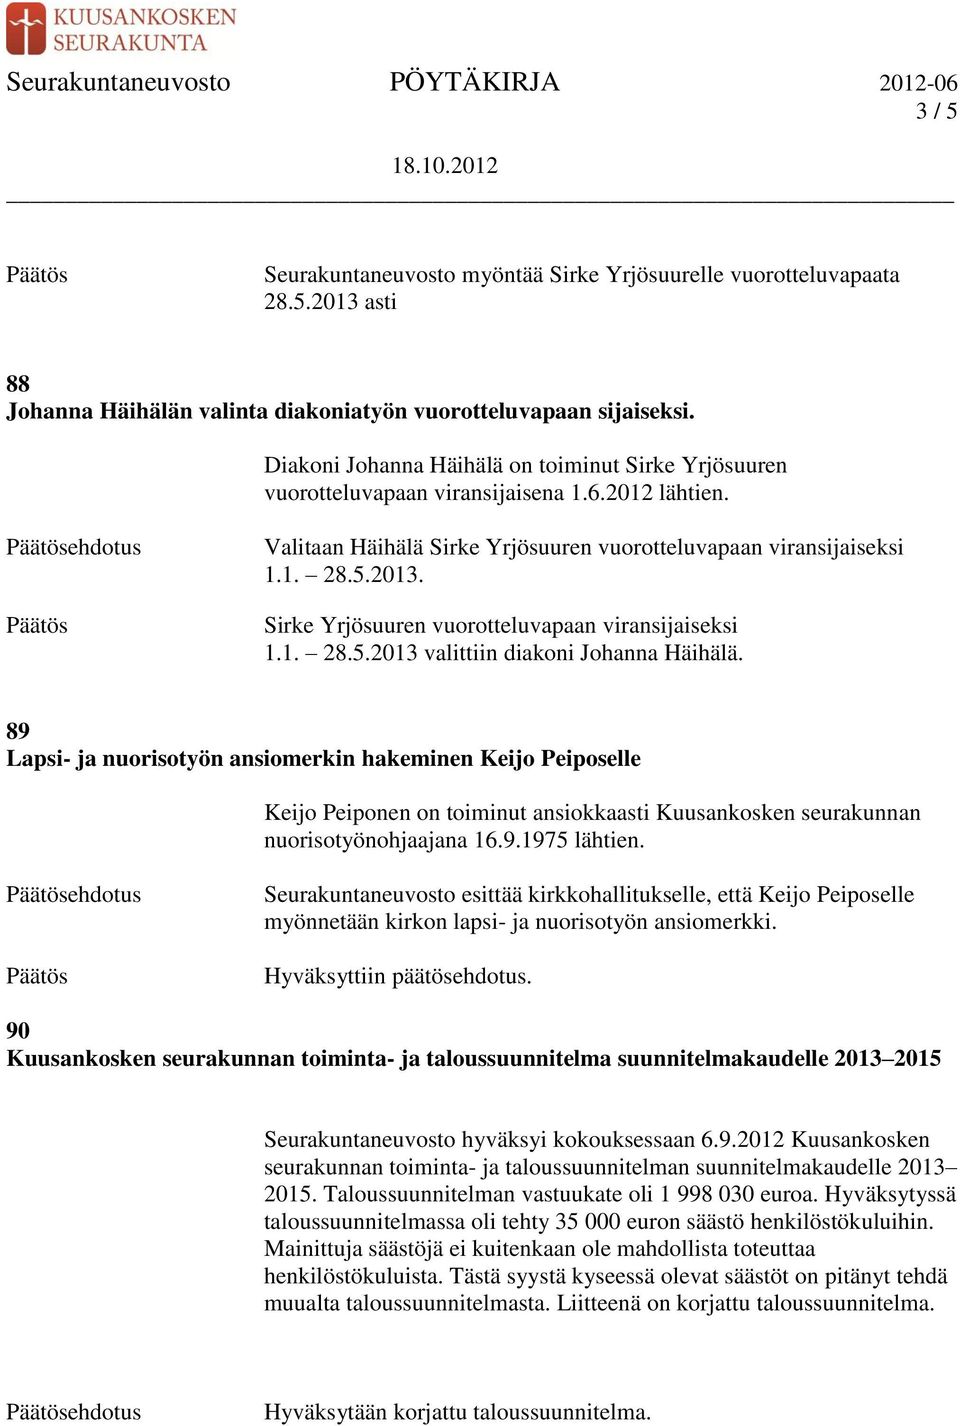 Sirke Yrjösuuren vuorotteluvapaan viransijaiseksi 1.1. 28.5.2013 valittiin diakoni Johanna Häihälä.